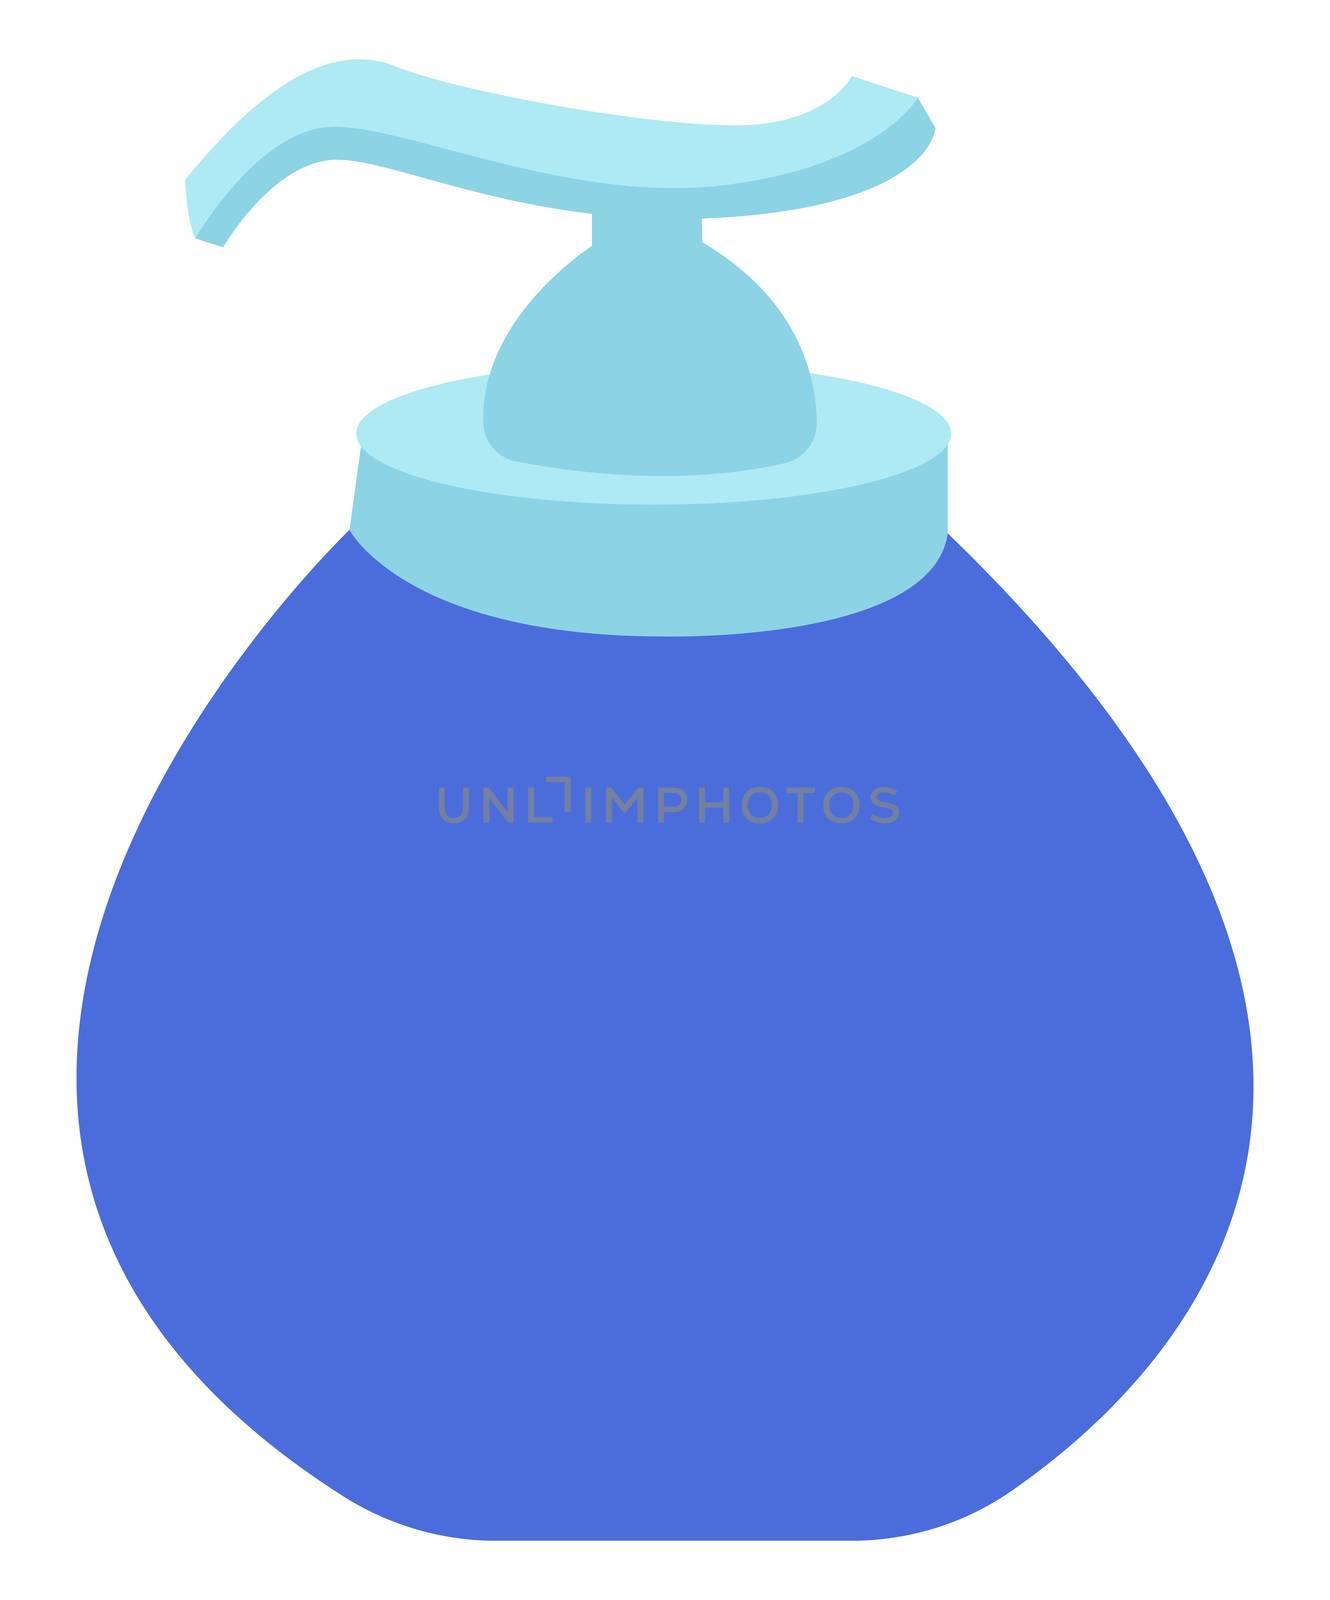 Hand sanitizer, illustration, vector on white background by Morphart